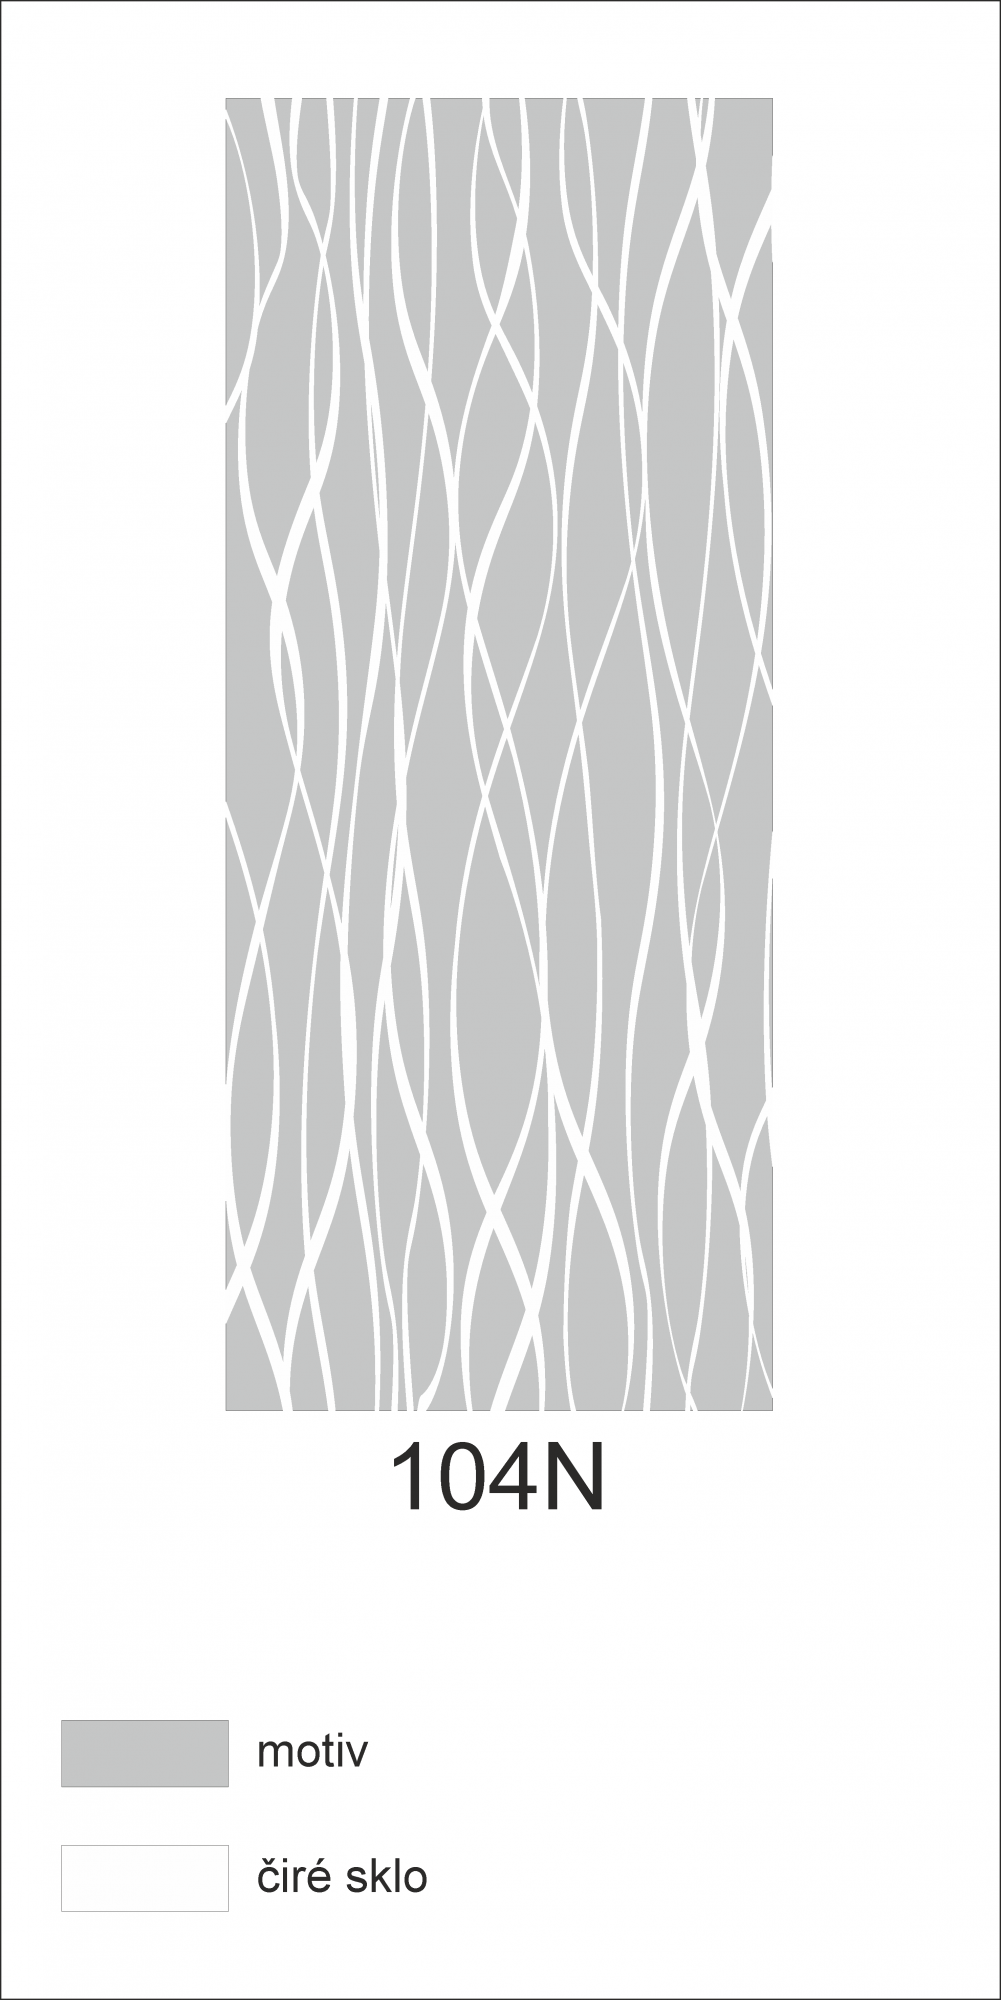 Možný motiv na skleněných dveřích nebo skleněných stěnách 104N - elegantní síť